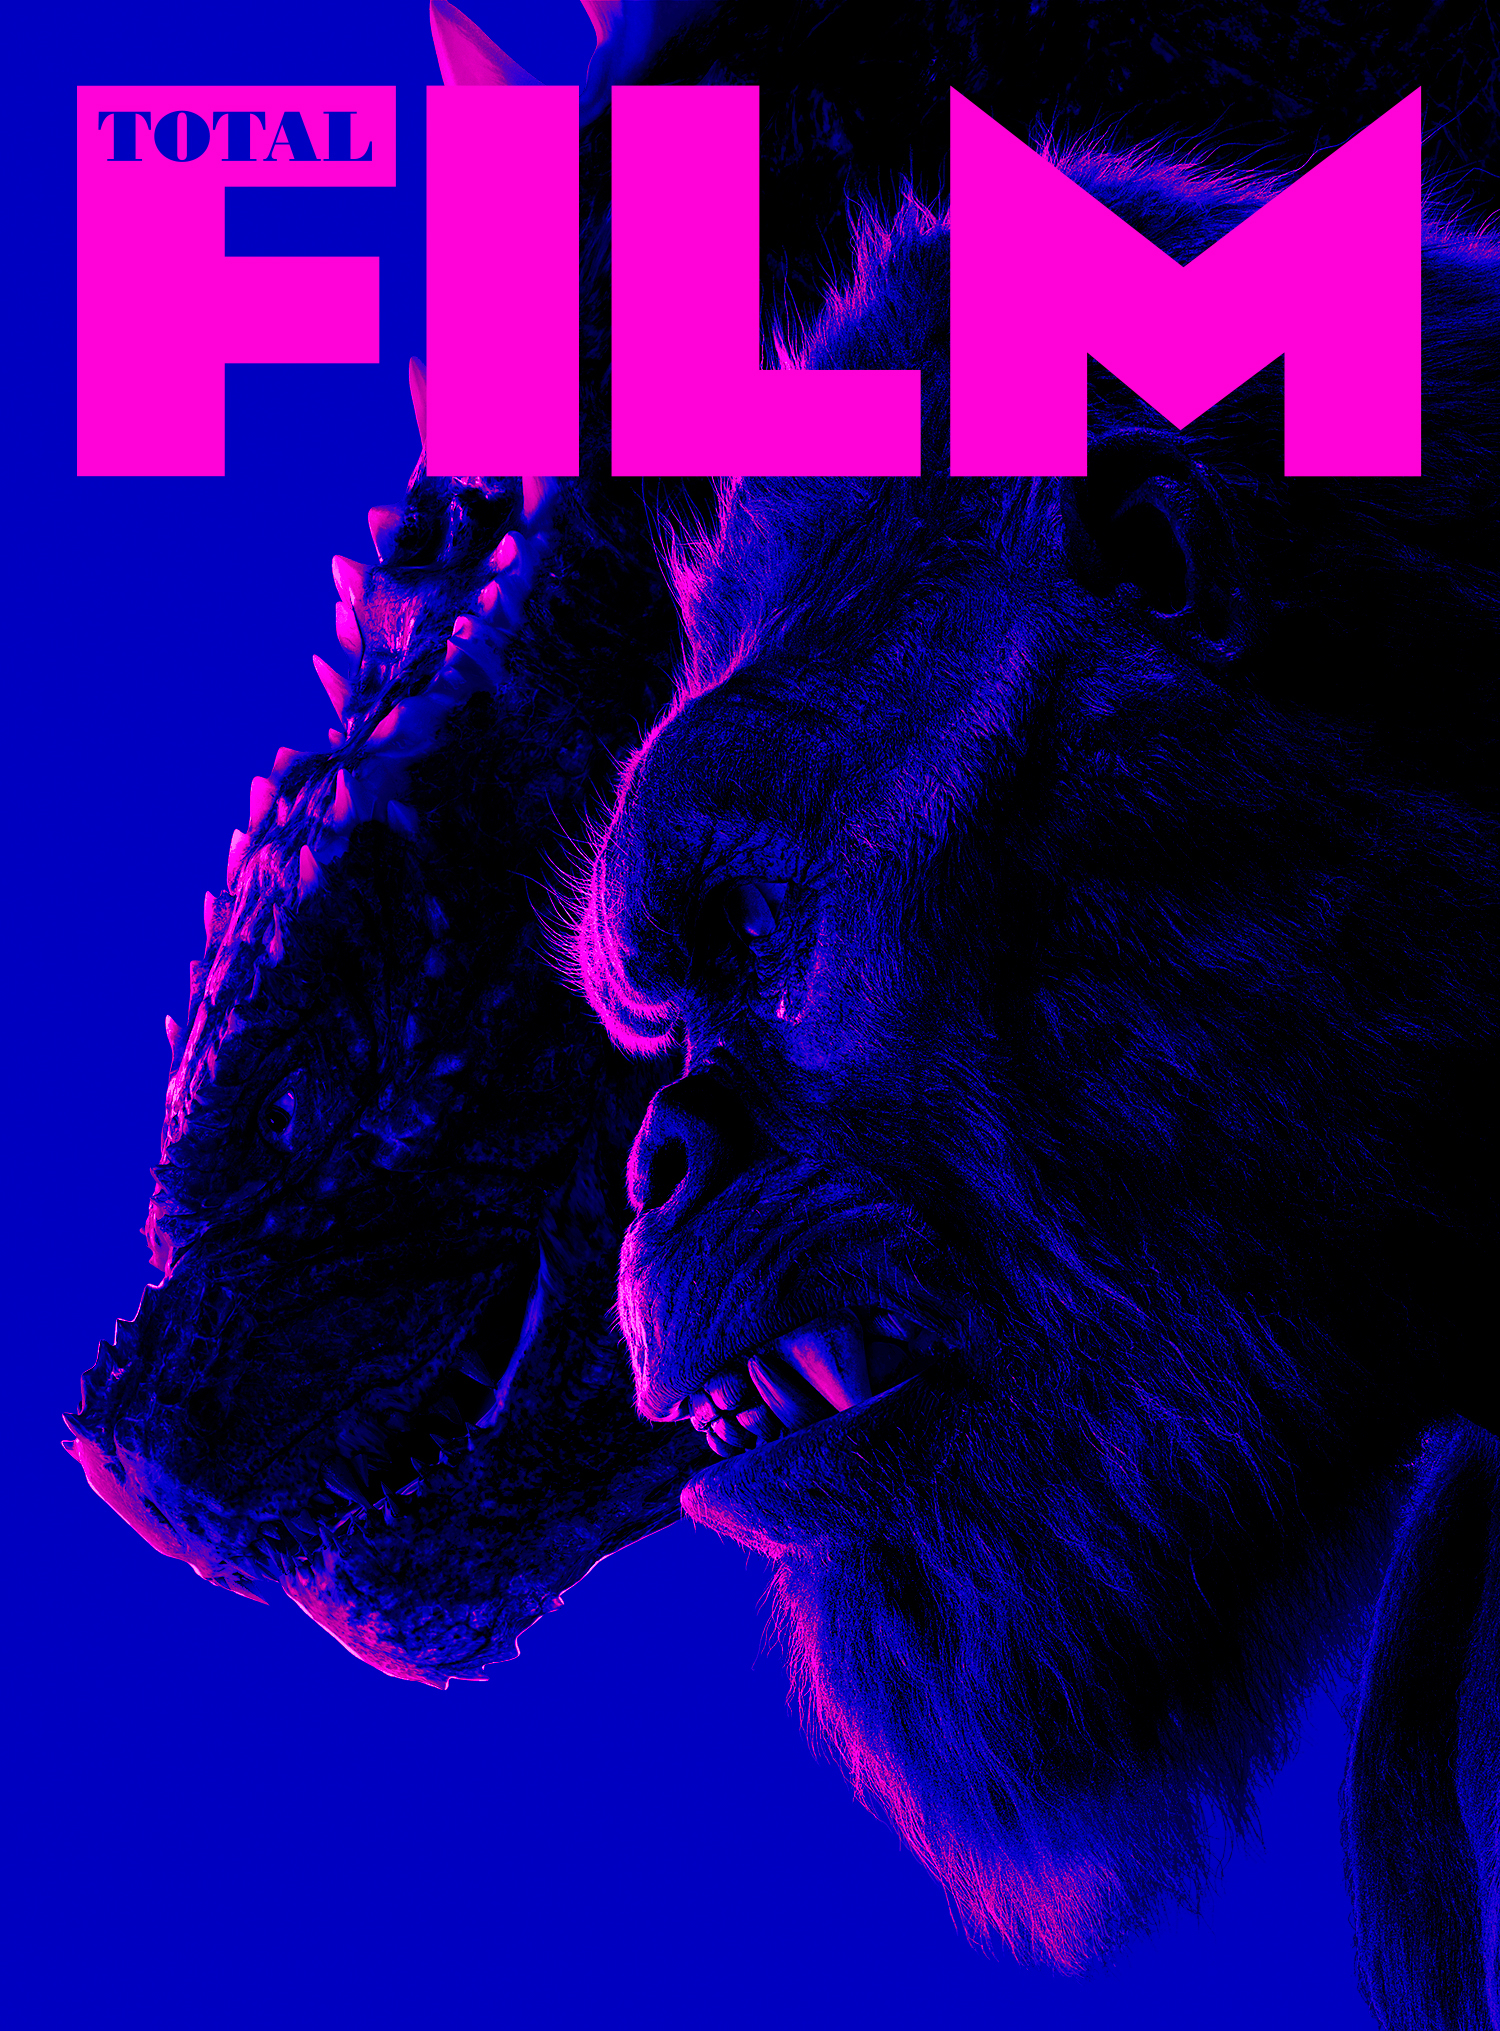 Obálka predplatného filmu Godzilla x Kong od Total Film